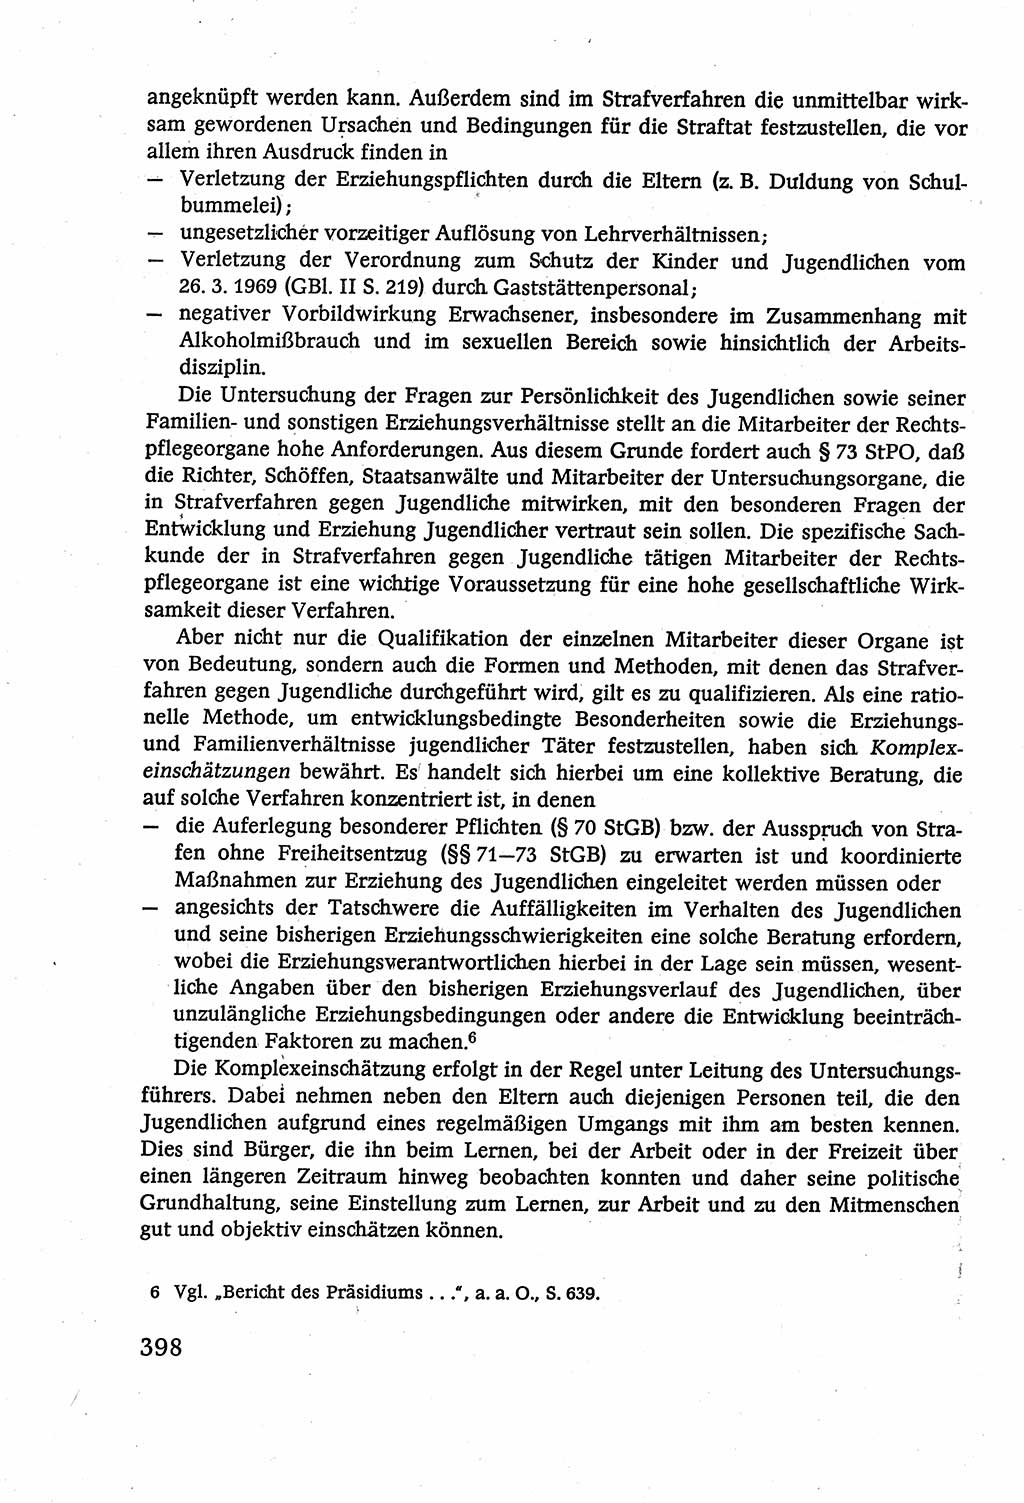 Strafverfahrensrecht [Deutsche Demokratische Republik (DDR)], Lehrbuch 1977, Seite 398 (Strafverf.-R. DDR Lb. 1977, S. 398)